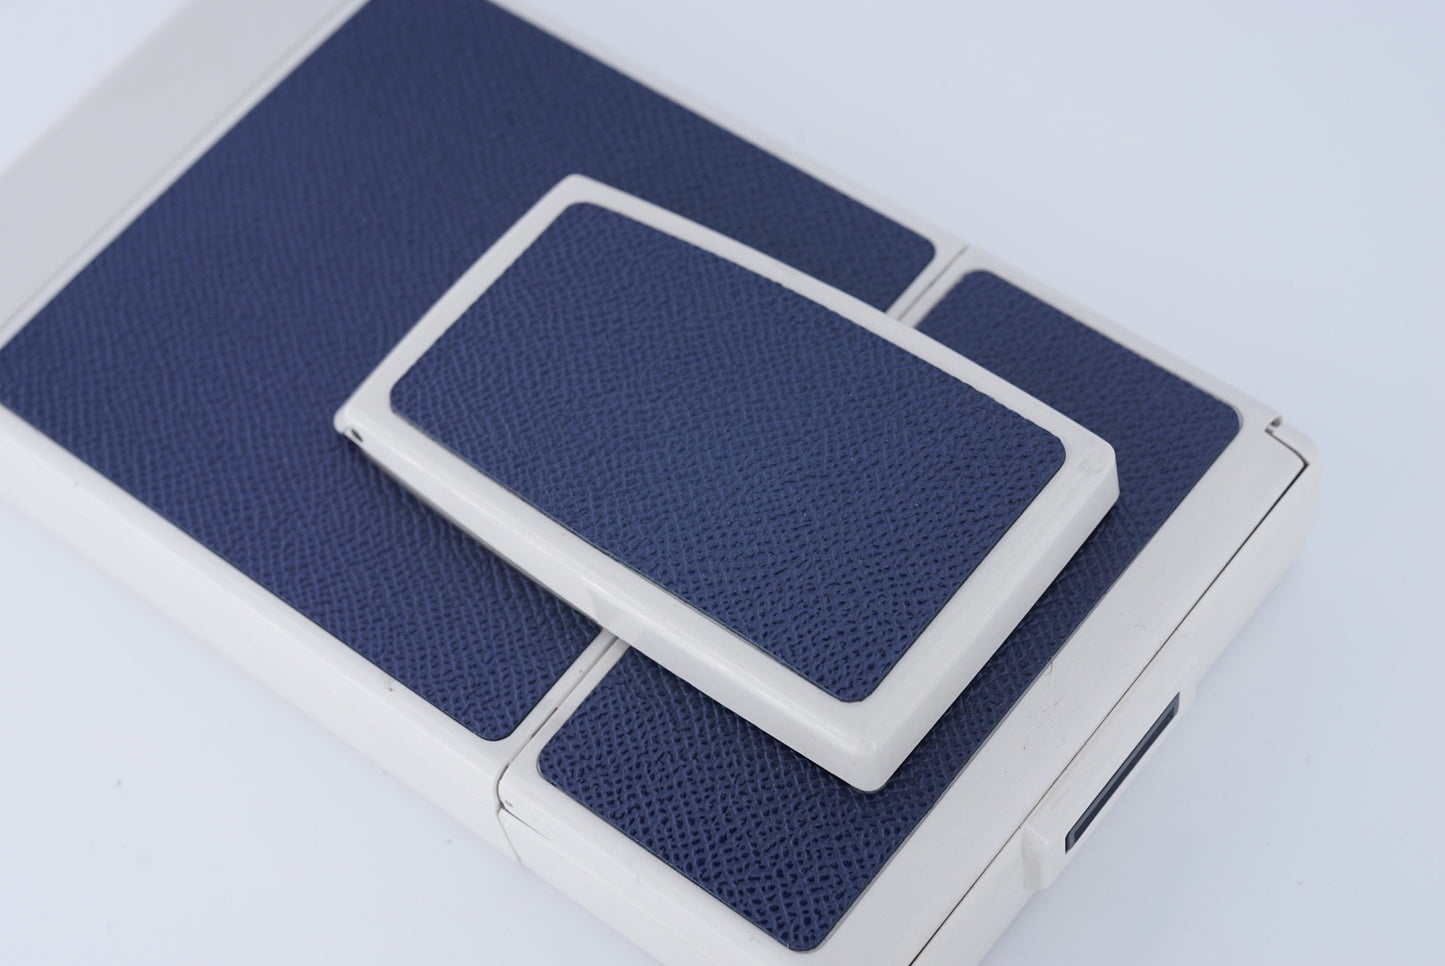 Polaroid Sx70 MODEL 2 WIHITE ivory camera S Power kit*DARK BLUE